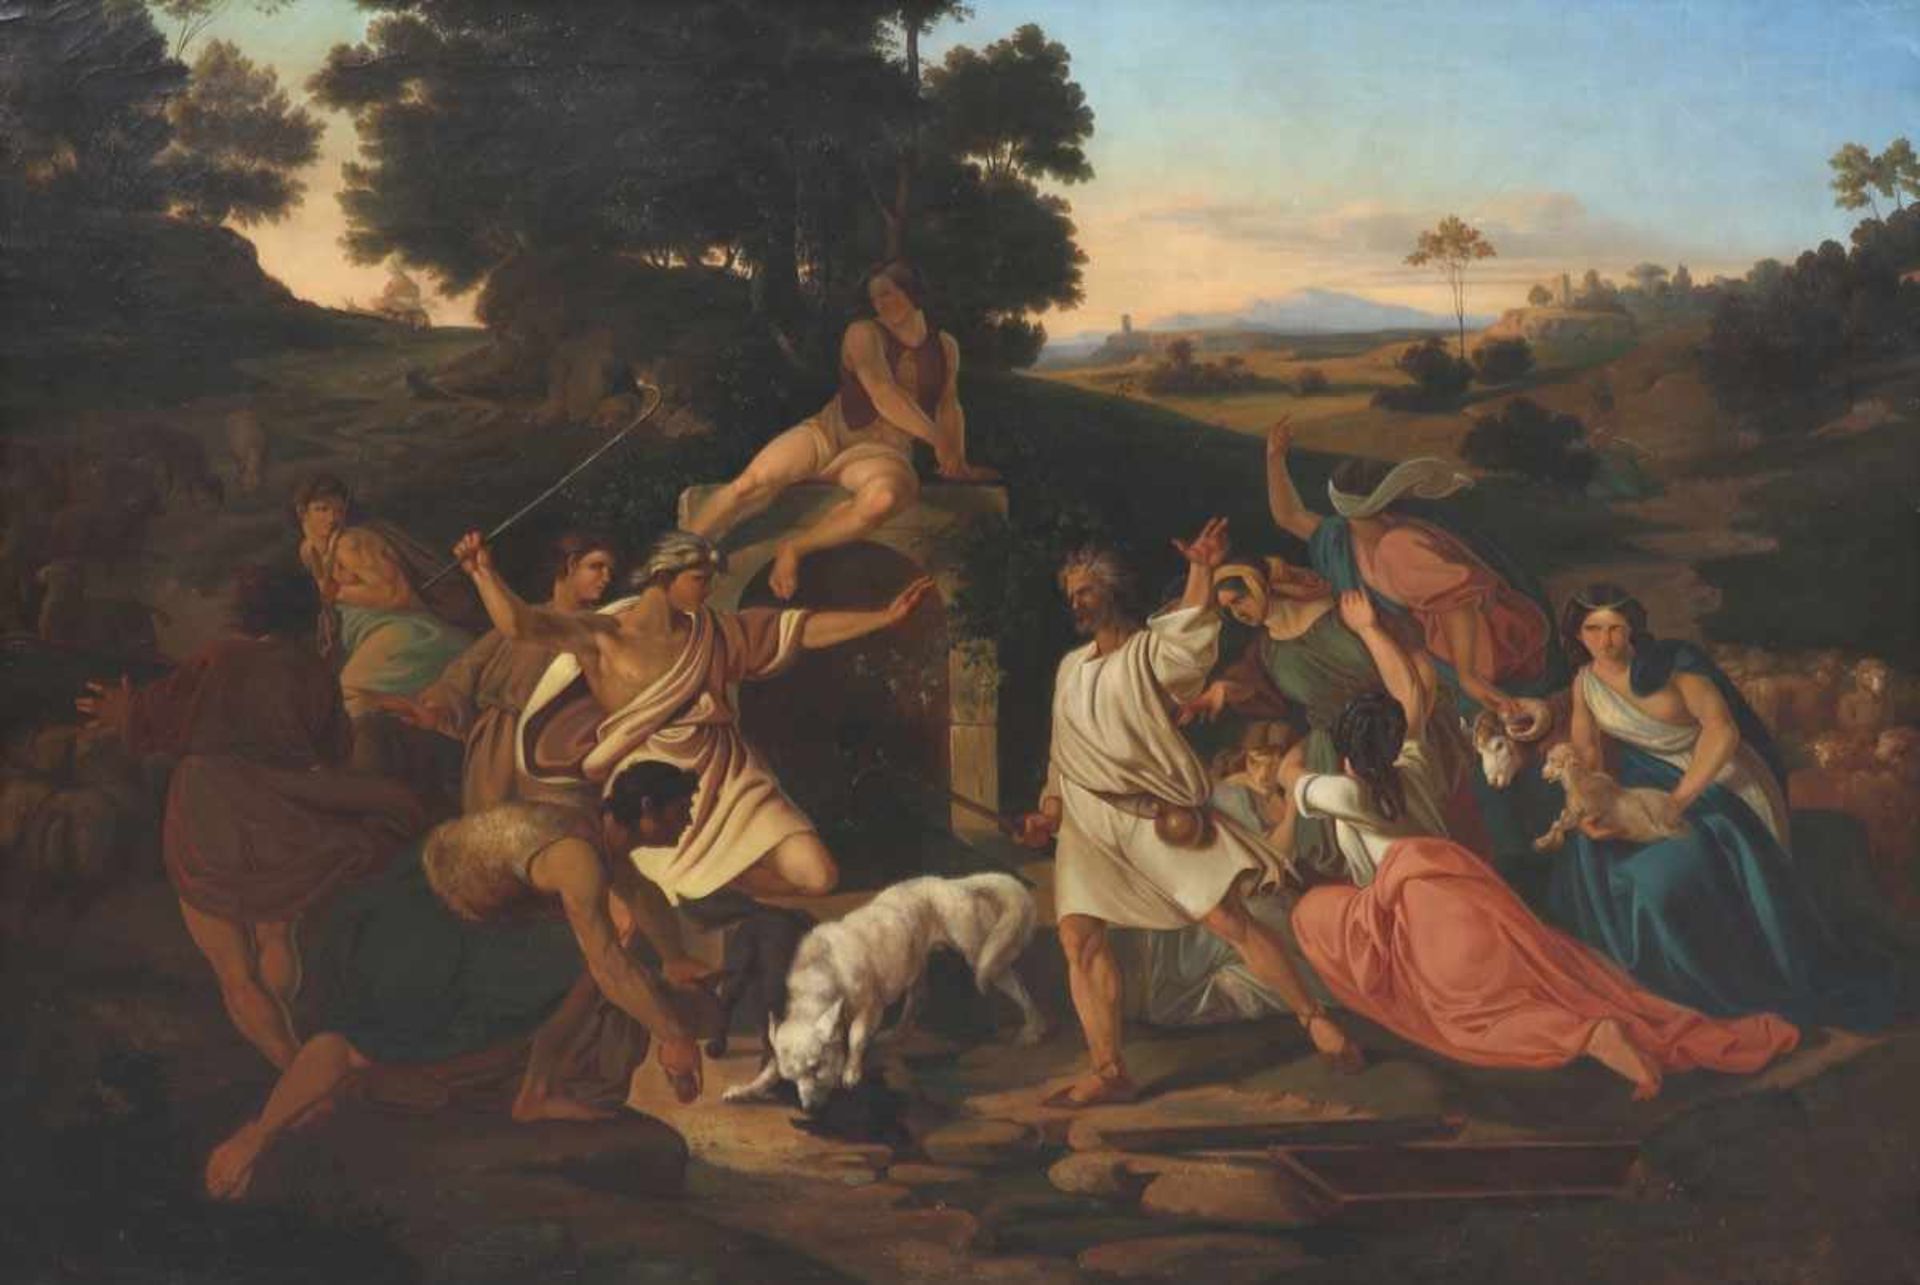 Künstler des 19. Jahrhunderts - Brunnenstreit von Isaak und den Philistern - Öl/Lwd. 126 x 173 cm.